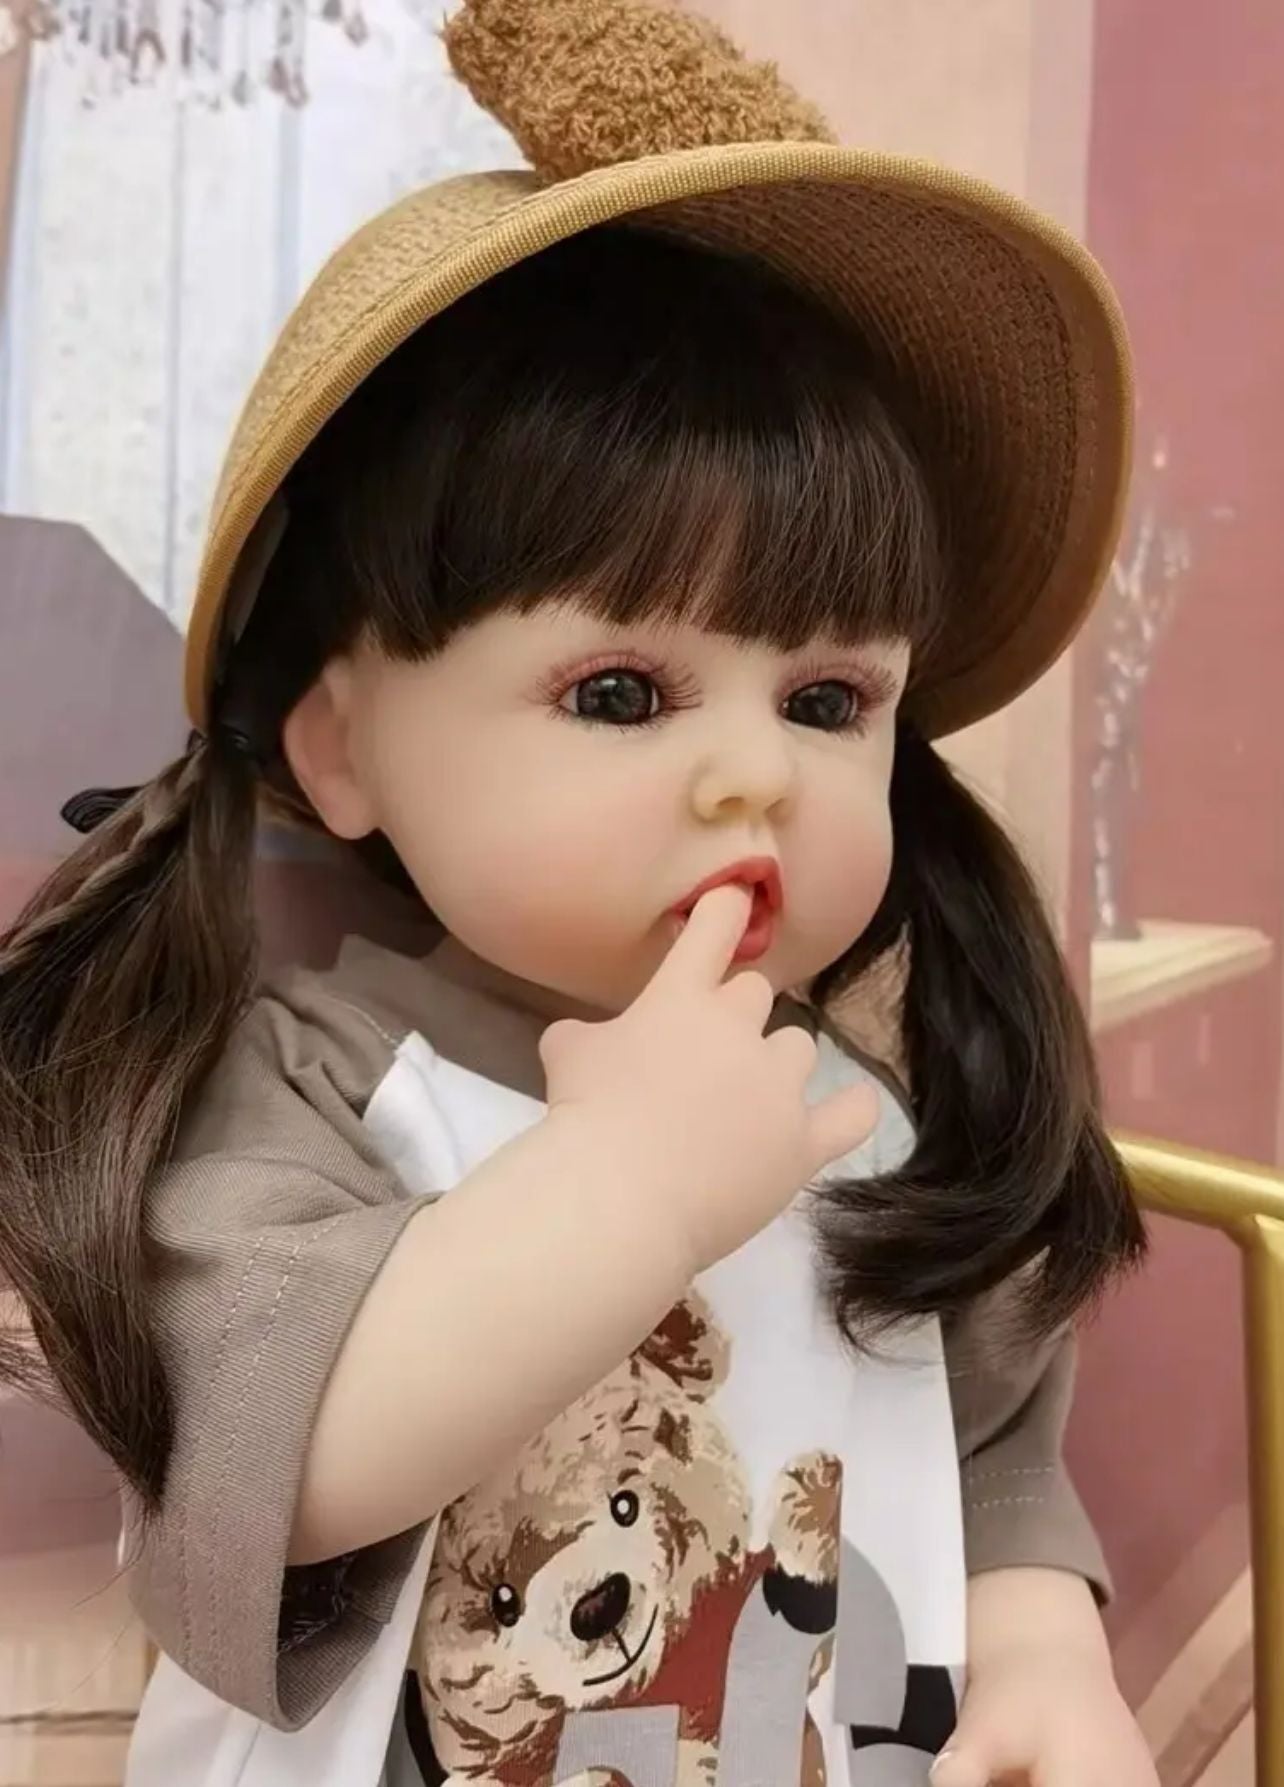 55 Cm Fashion Princess Silicone Vinyi Take Bath Baby Toys Reborn